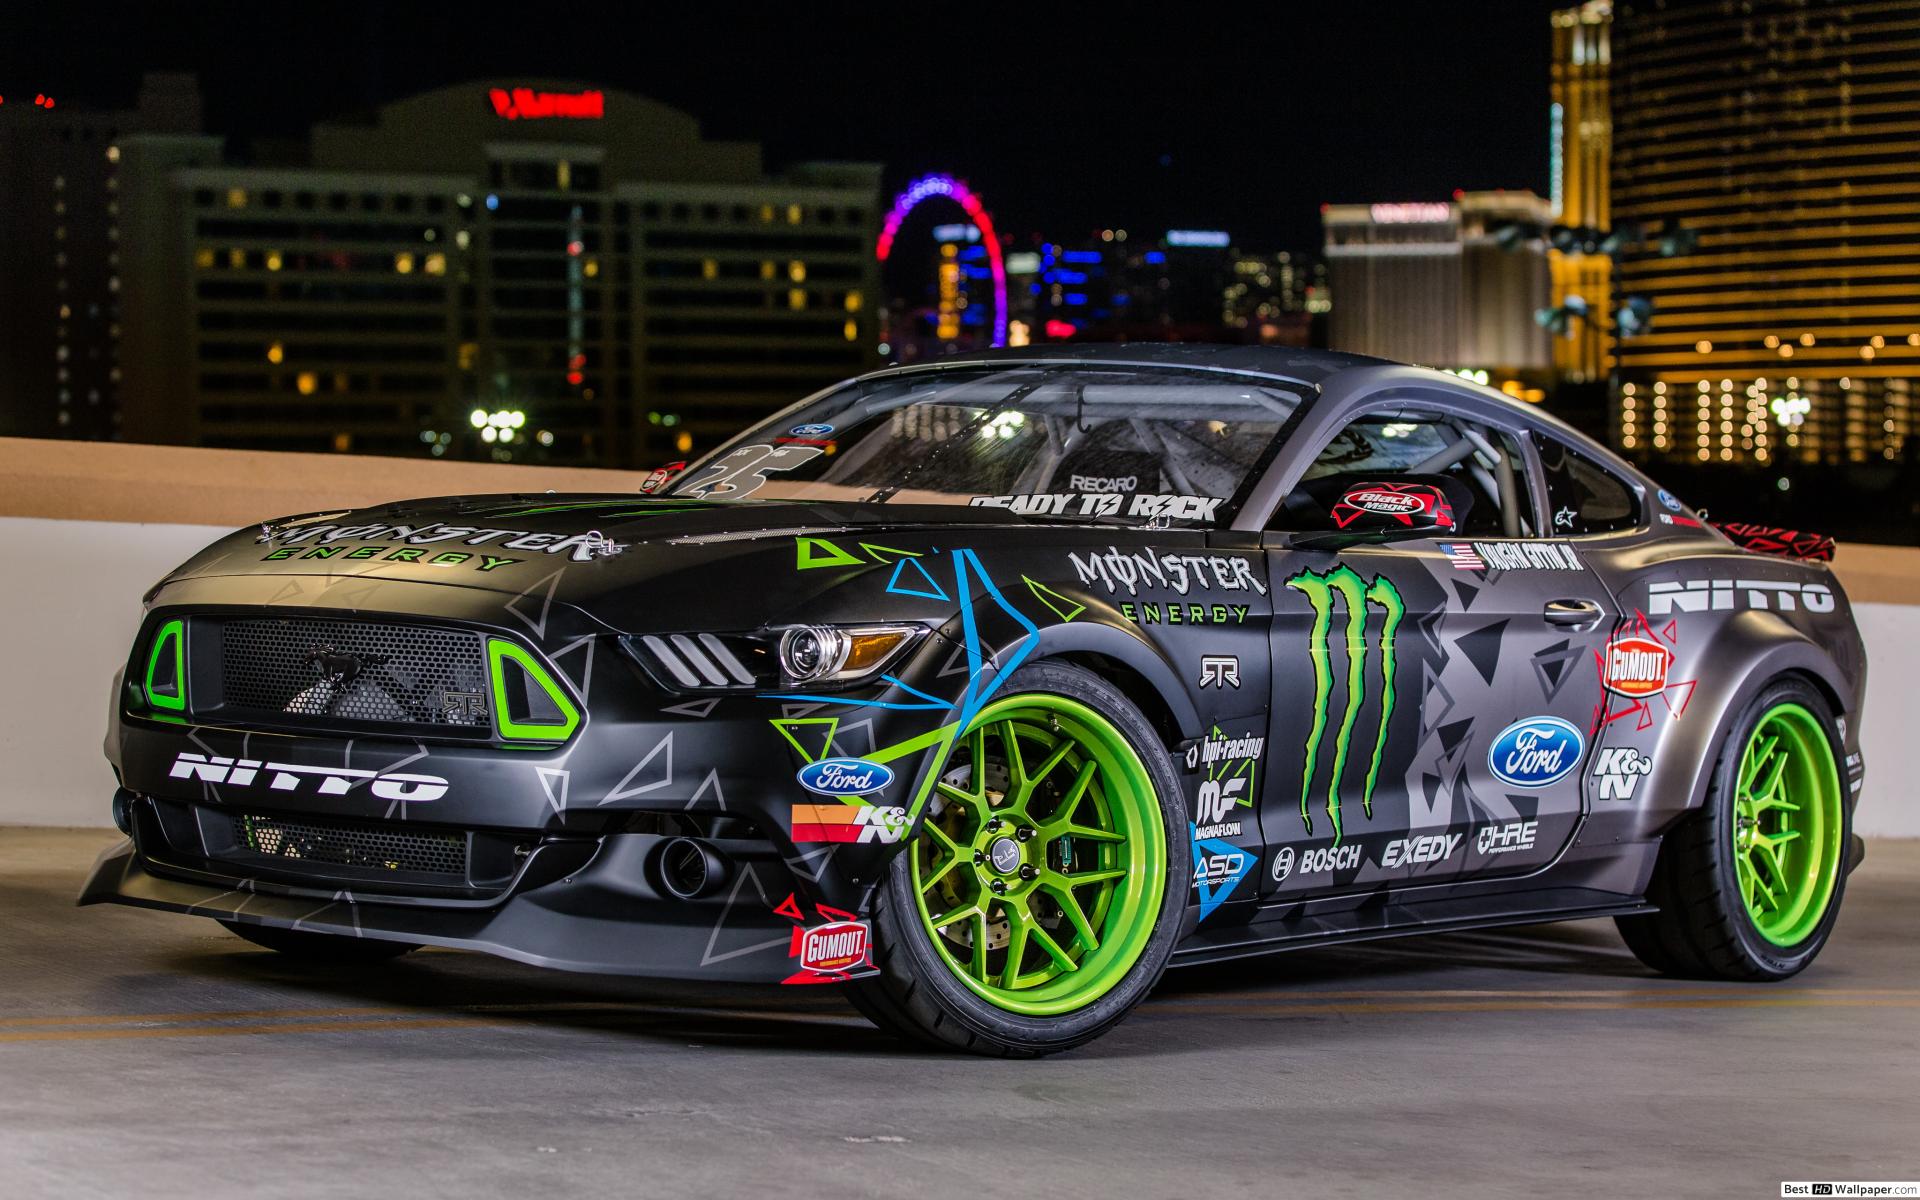 Ford Mustang Monster Energy - HD Wallpaper 